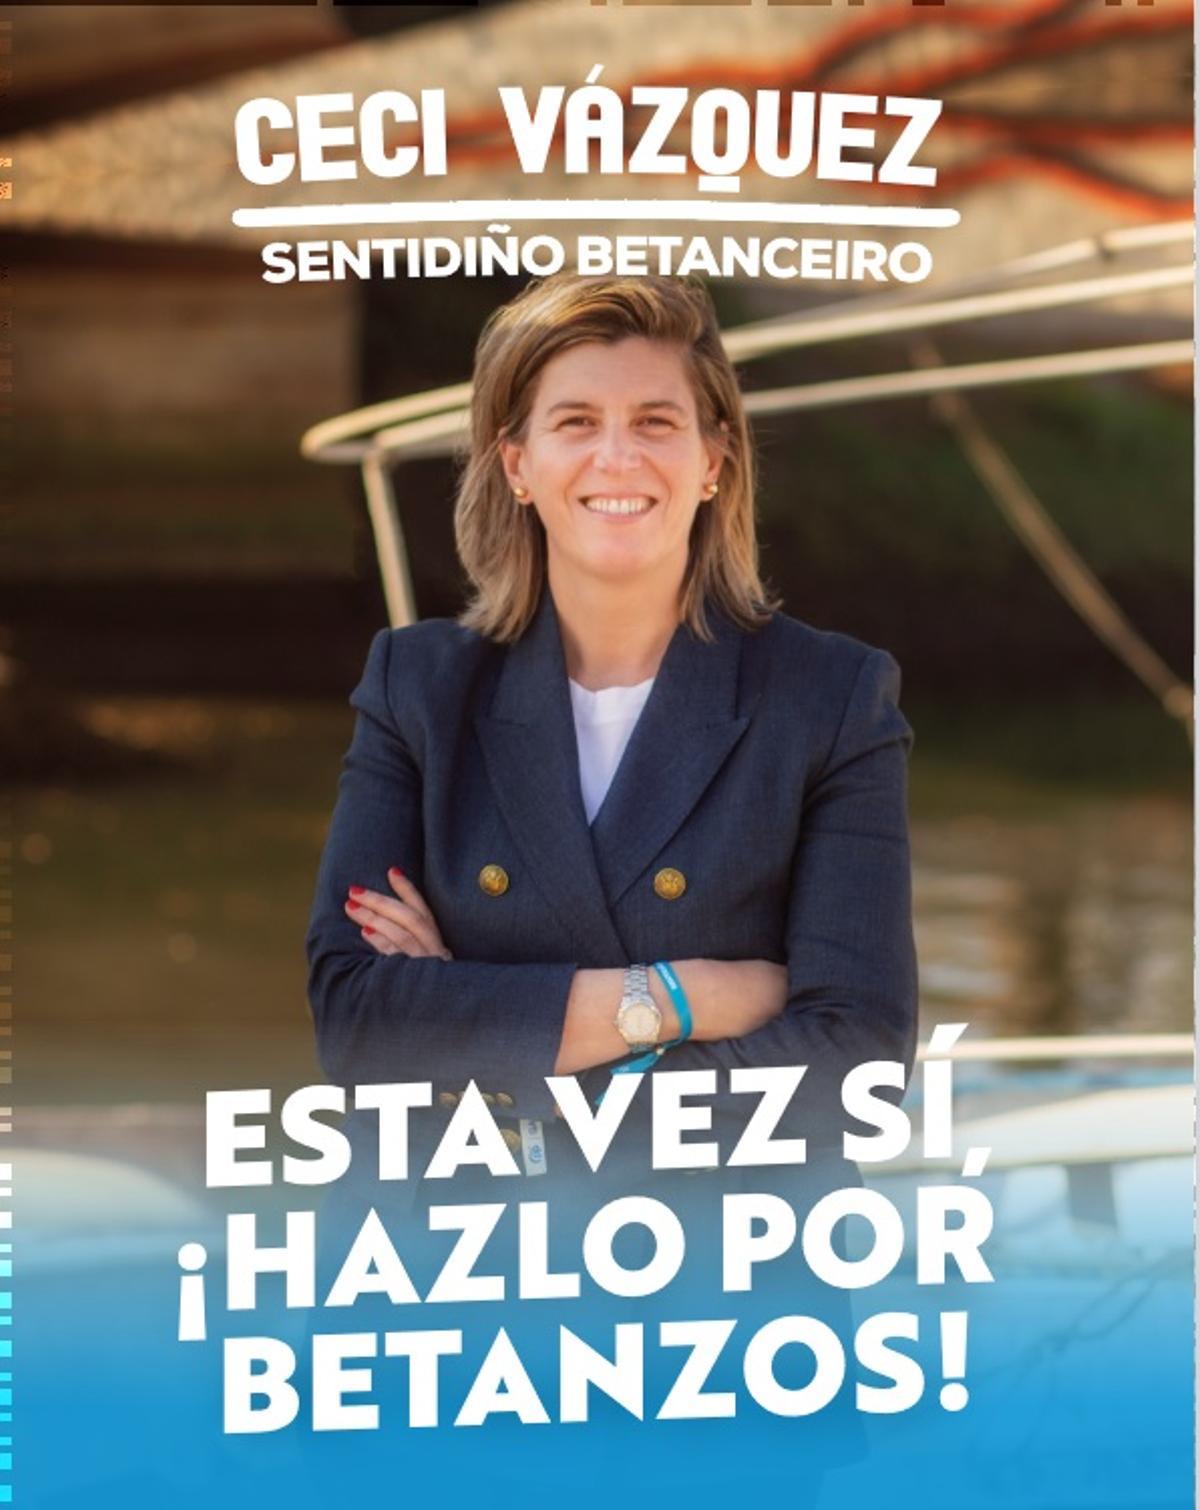 Cartel de Ceccilia Vázquez